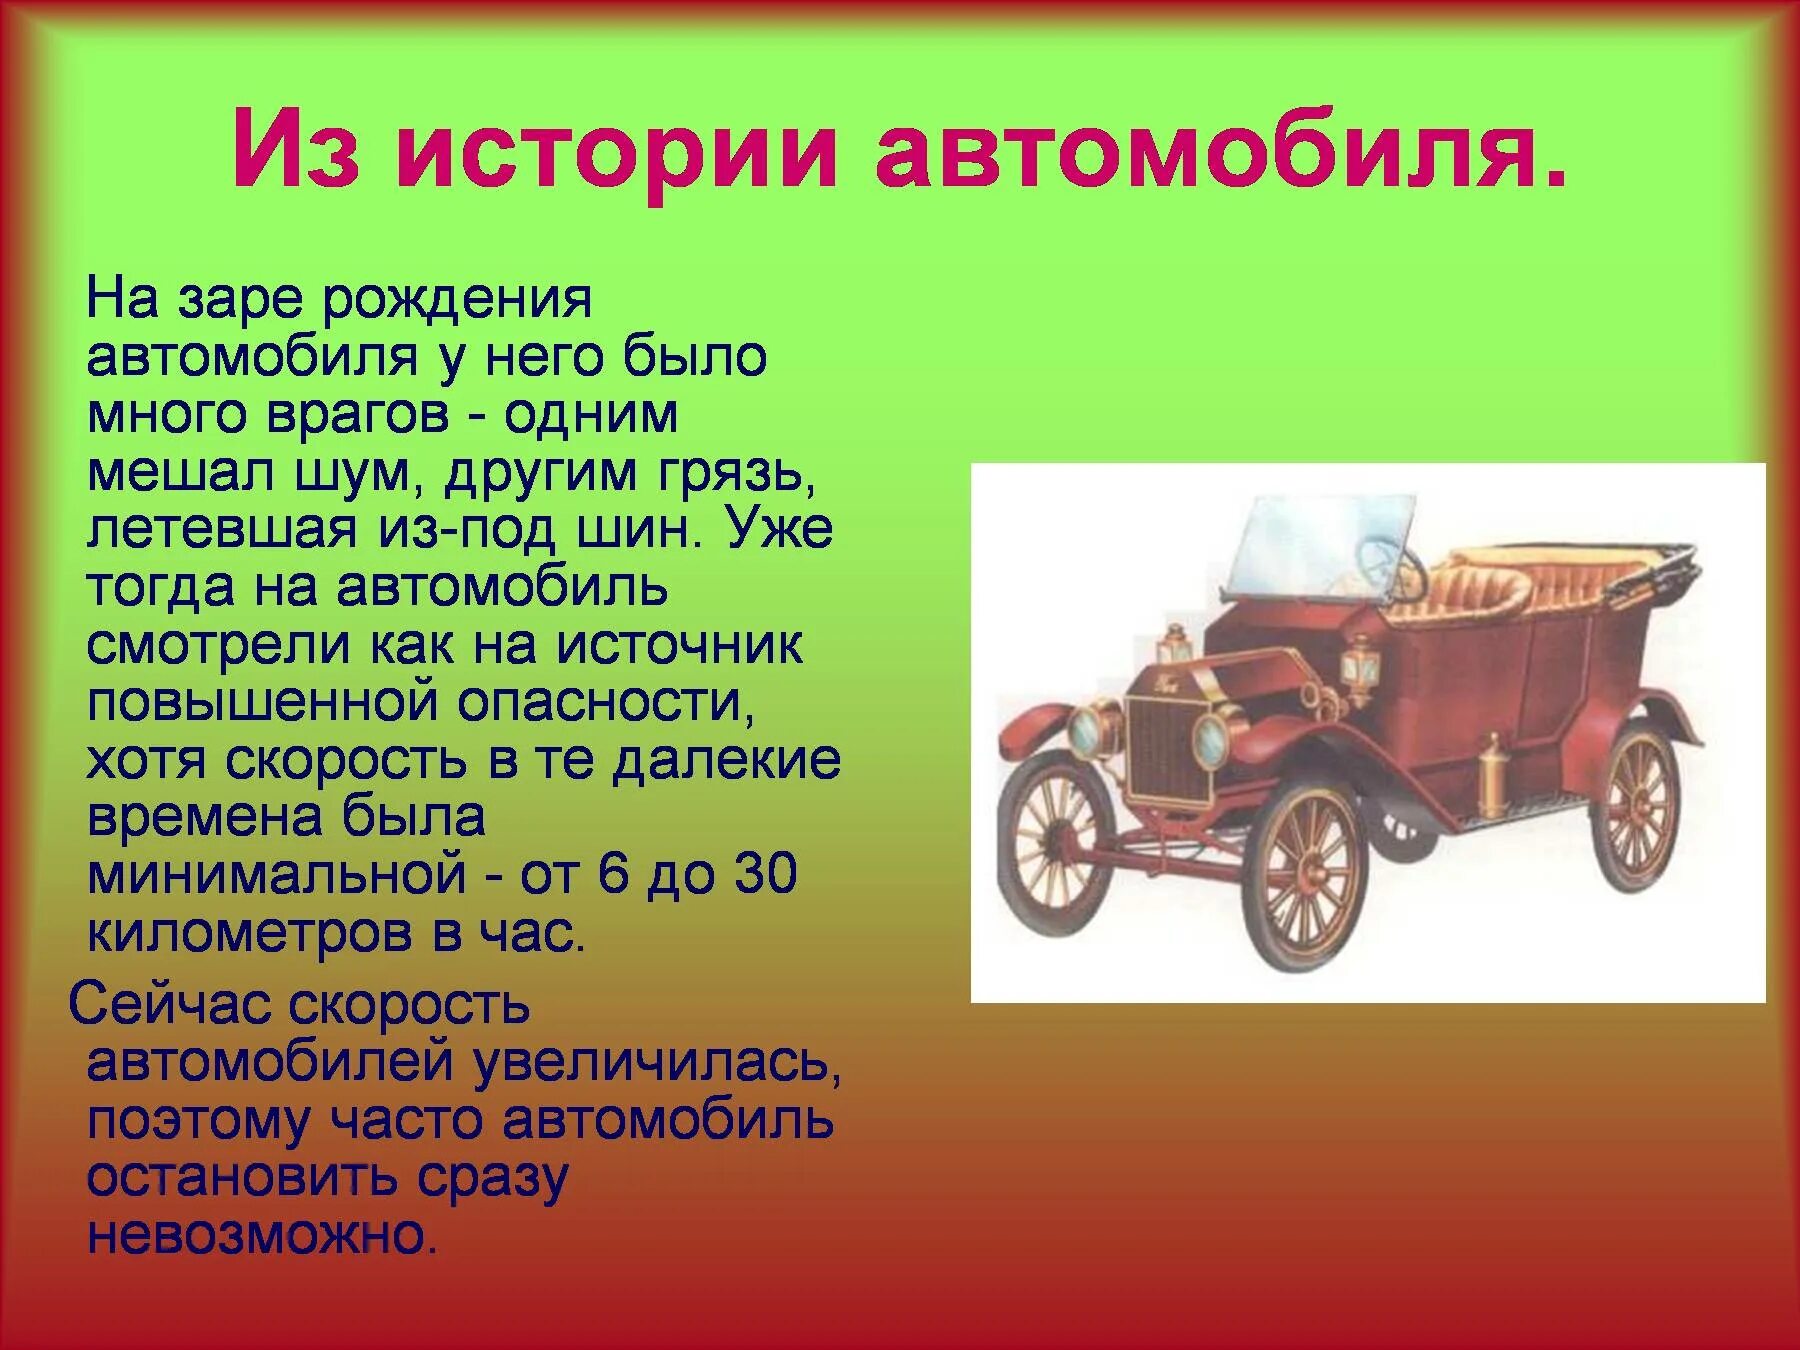 История появления автомобиля для детей. История автомобиля презентация. История возникновения автомобиля. Презентация про автомобили для детей.